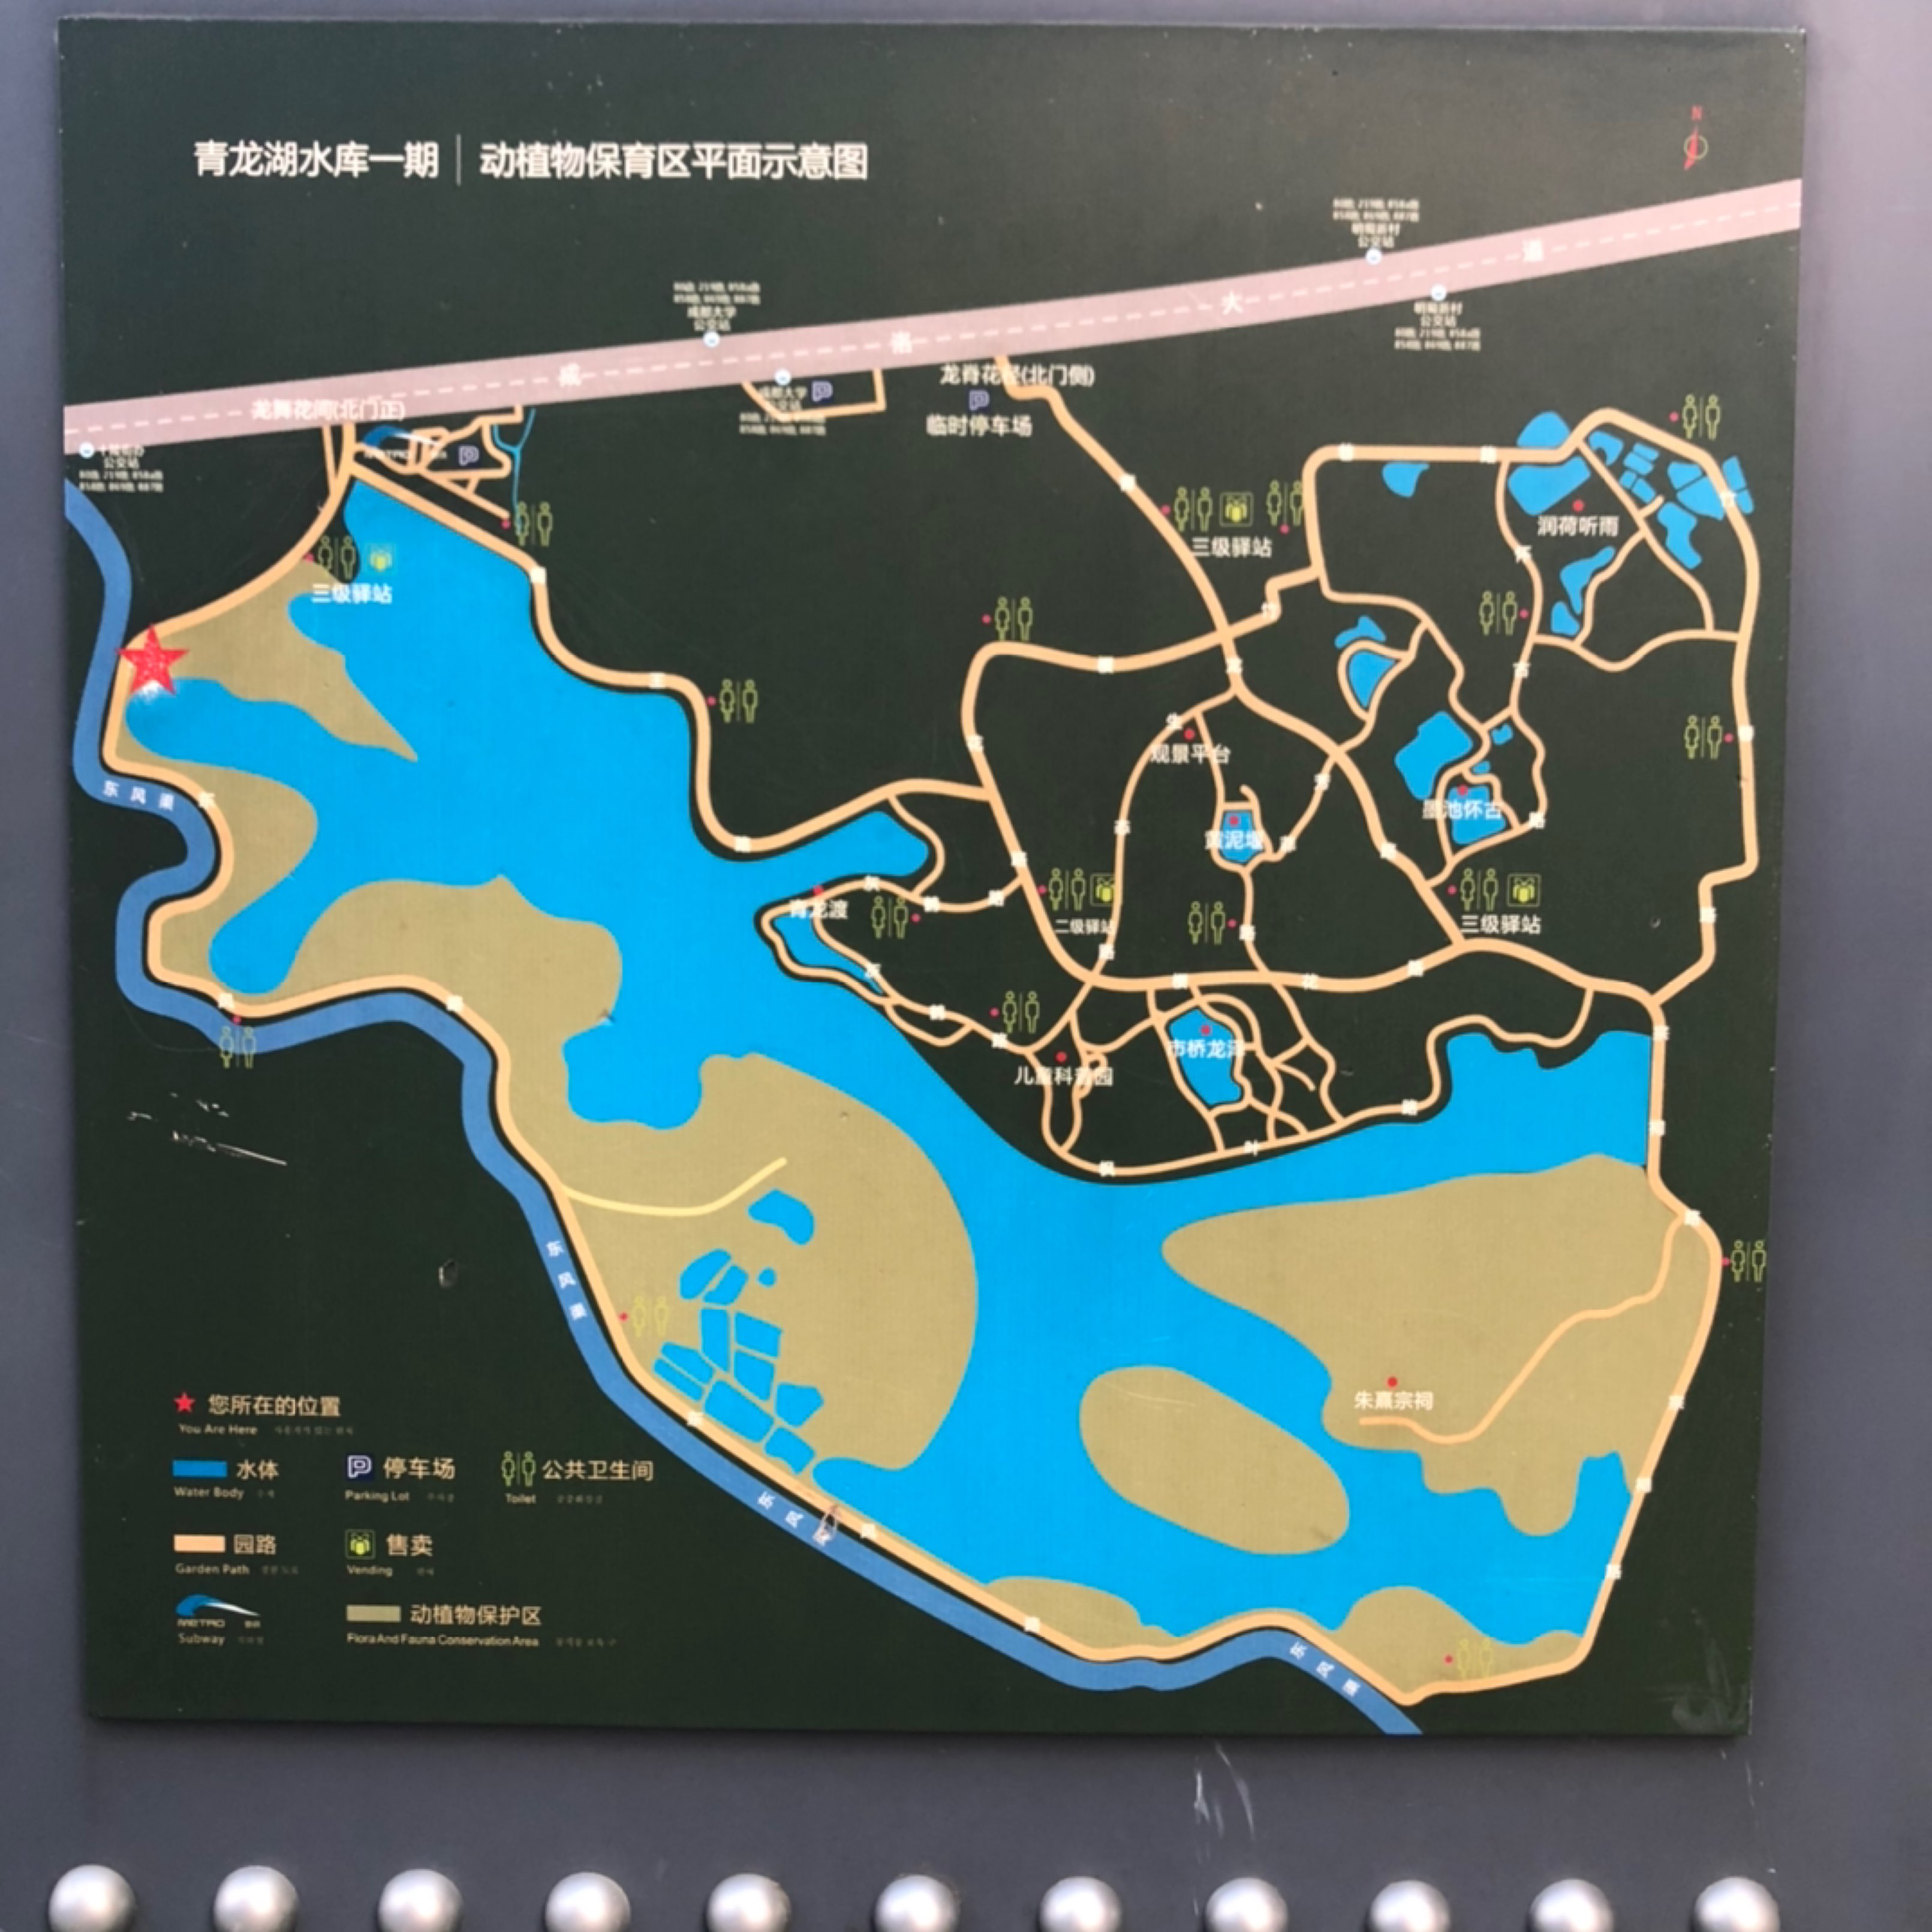 成都青龙湖公园地图图片